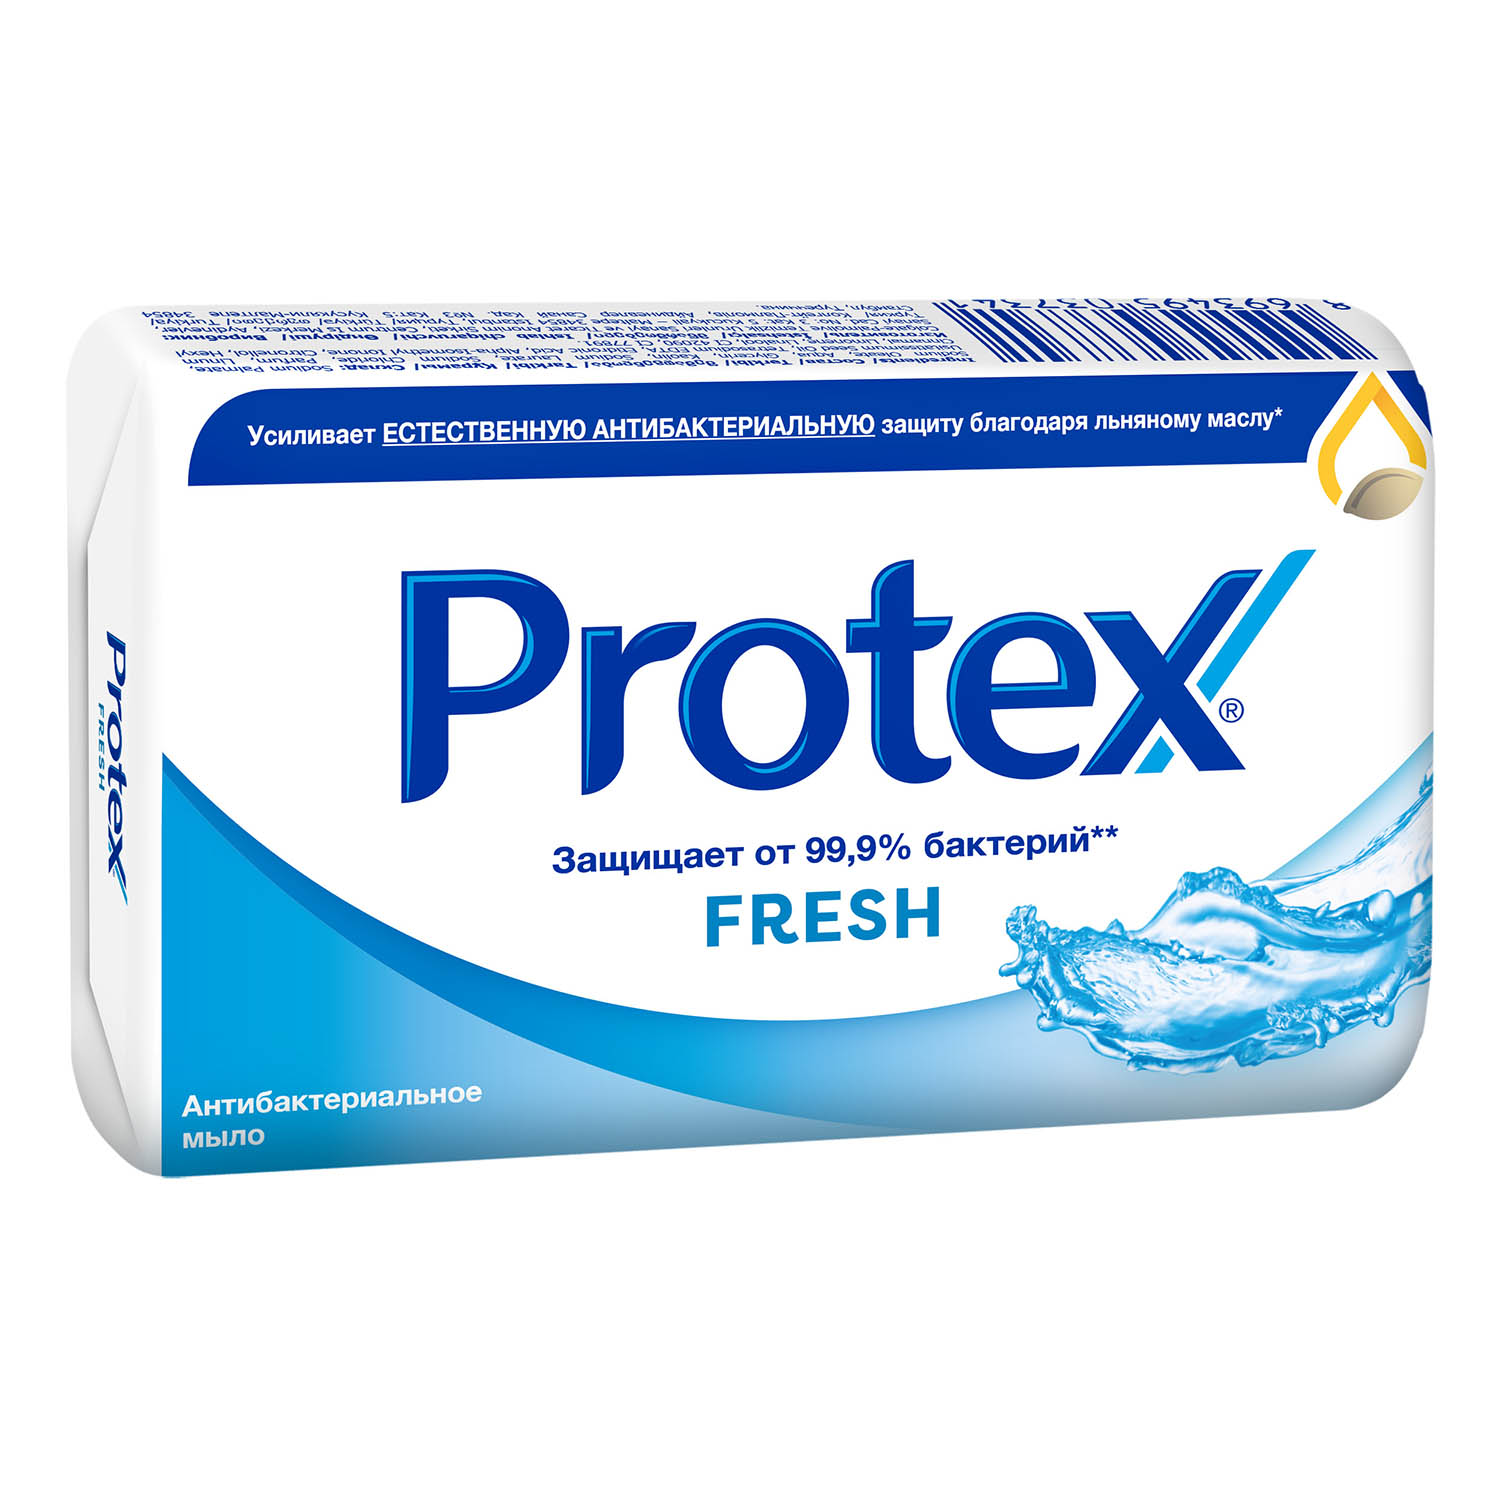 Мыло туалетное Protex Fresh антибактериальное, 90 г мыло туалетное protex ultra антибактериальное с льняным маслом 90 гр